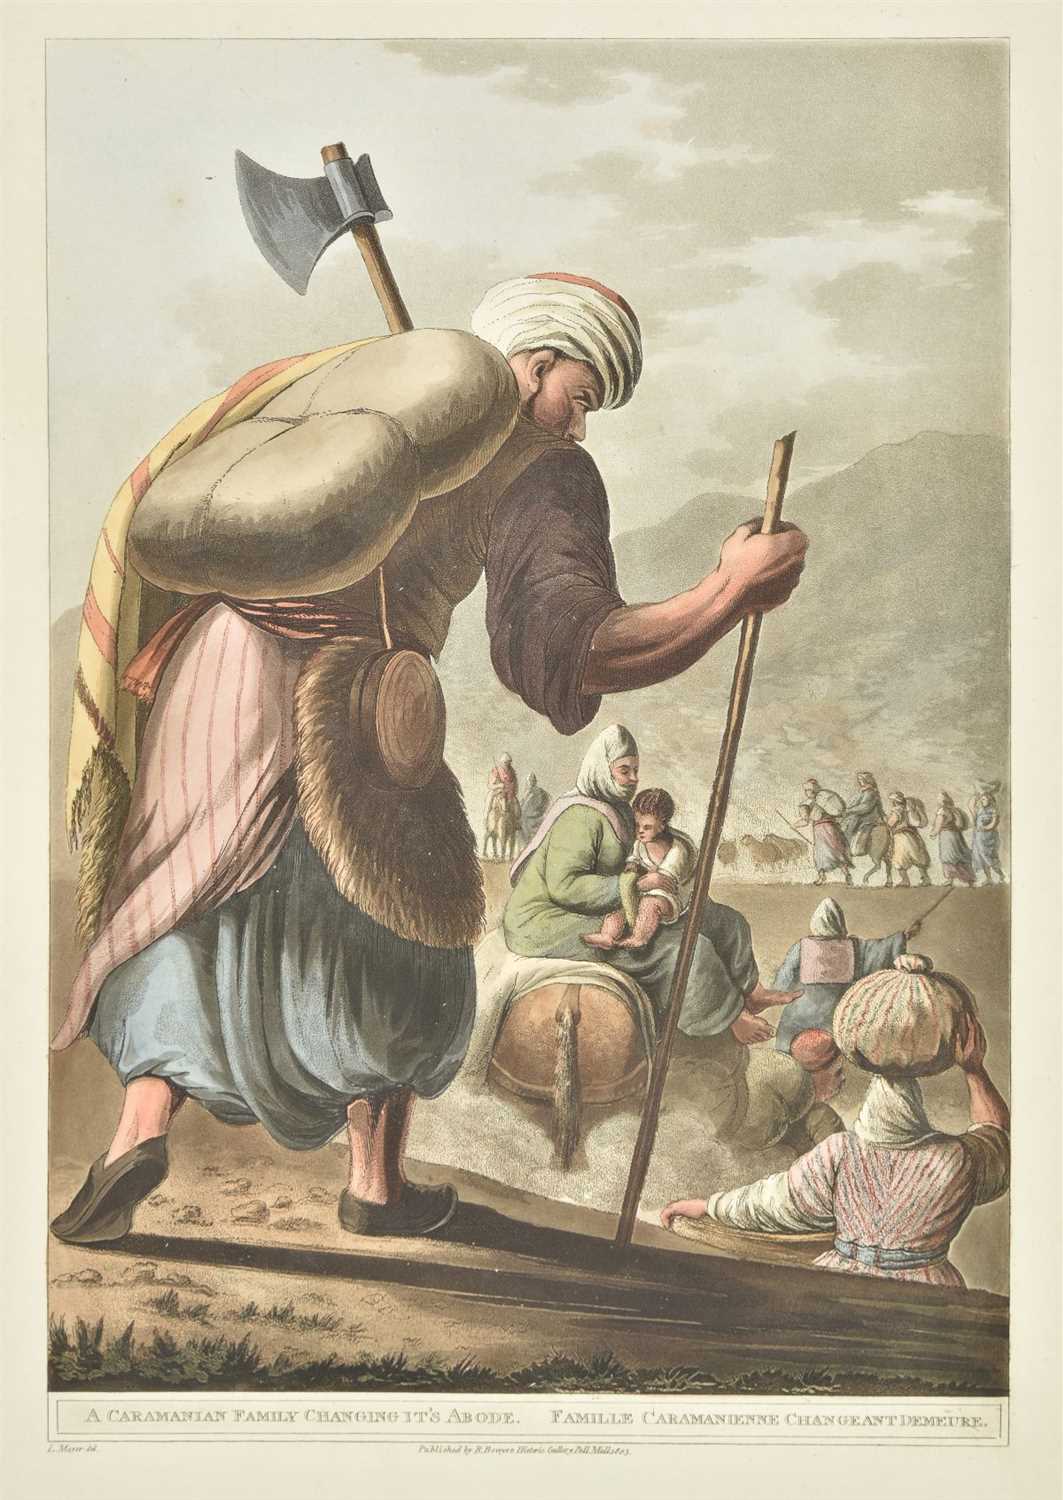 Lot 45 - Mayer (Luigi). Views in the Ottoman Empire, 1st edition, 1803